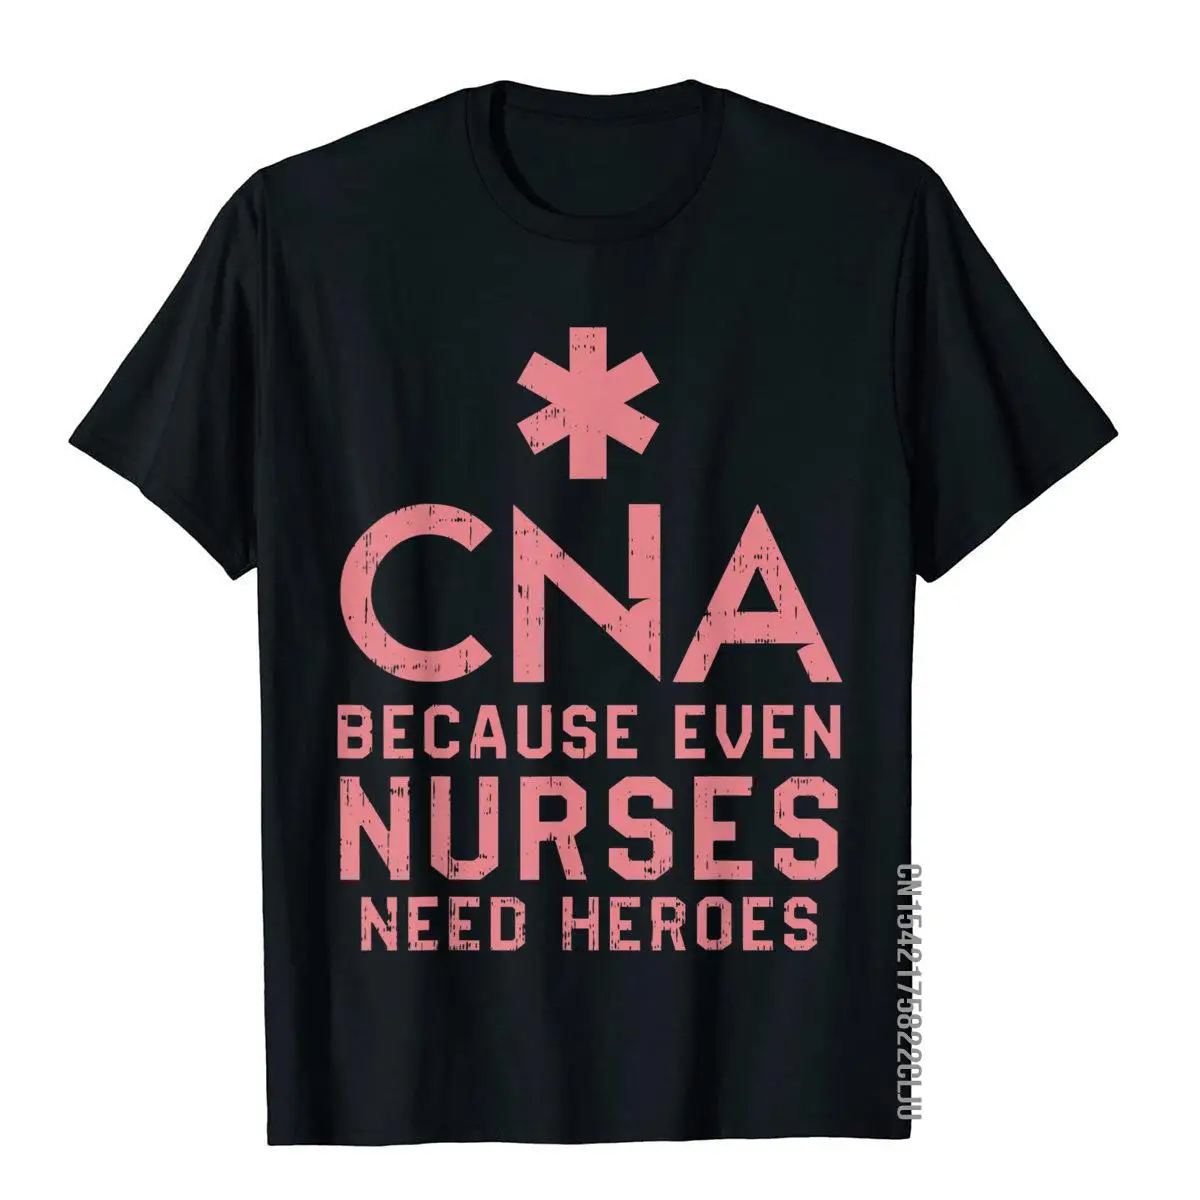 

CNA, потому что даже медсестры нуждаются в детской подарочной футболке для кормления, Хлопковая мужская футболка, футболки под заказ, классич...